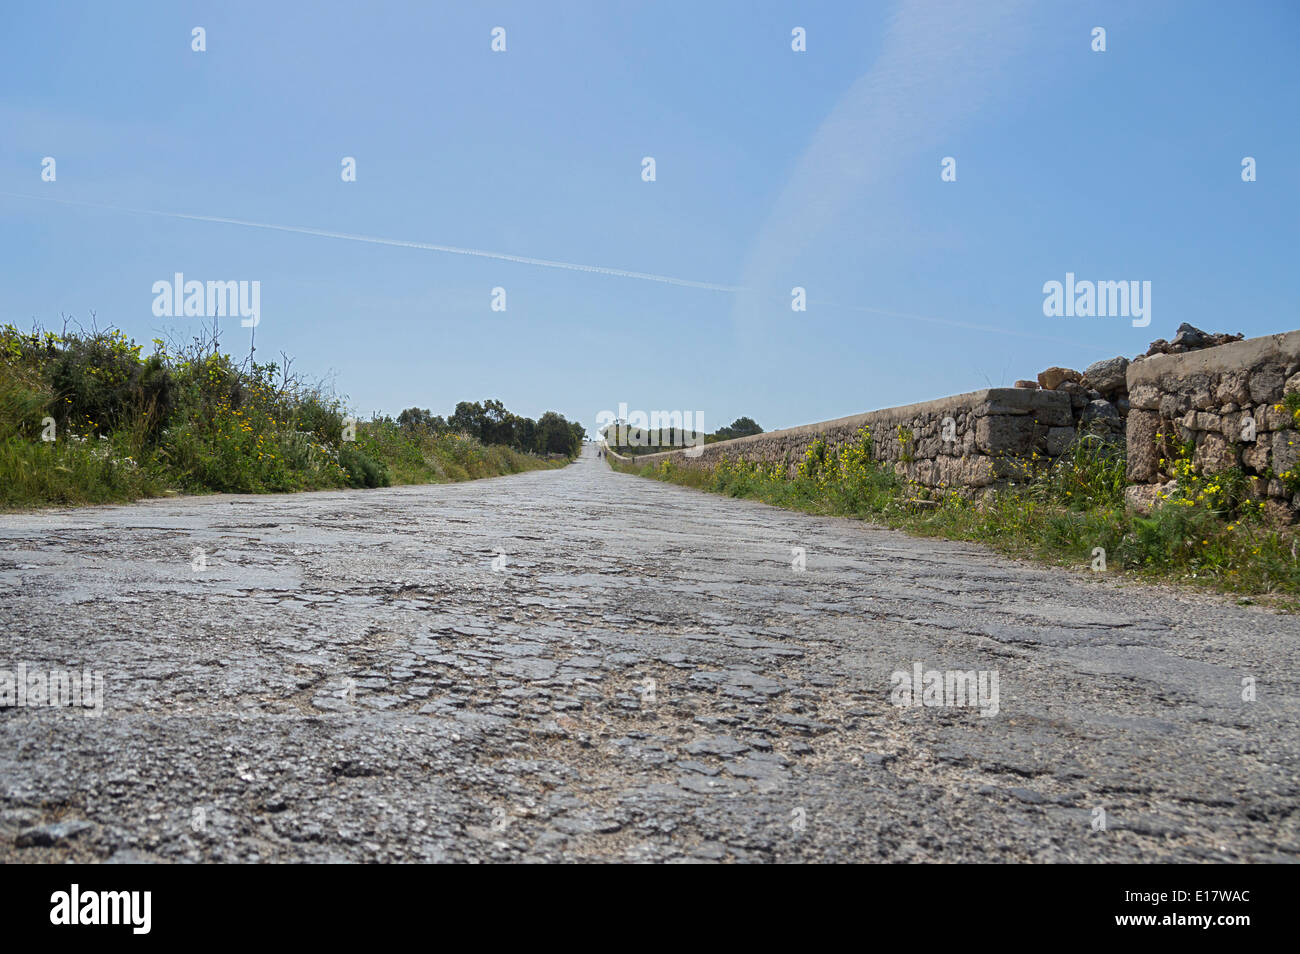 Rough, uneven, bumpy, poor, roads in Malta, Europe. Stock Photo